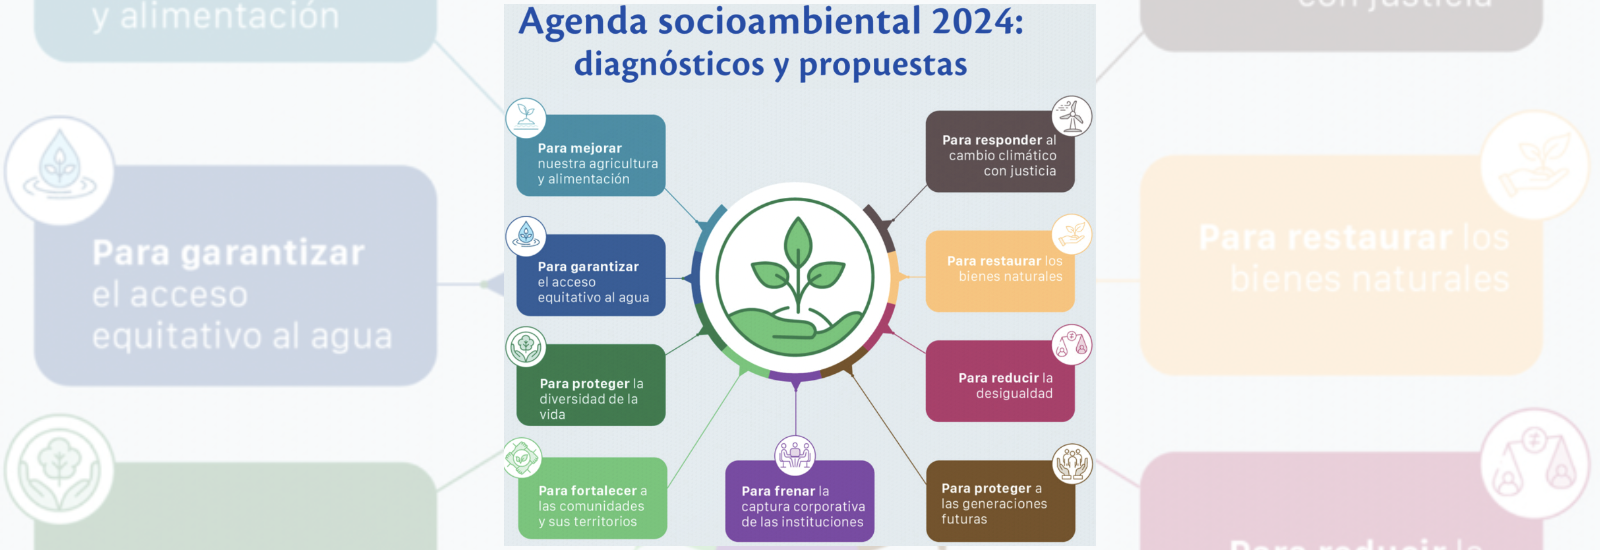 Imagen Patricia Gerez Fernández colabora en la elaboración de la Agenda Socioambiental 2024